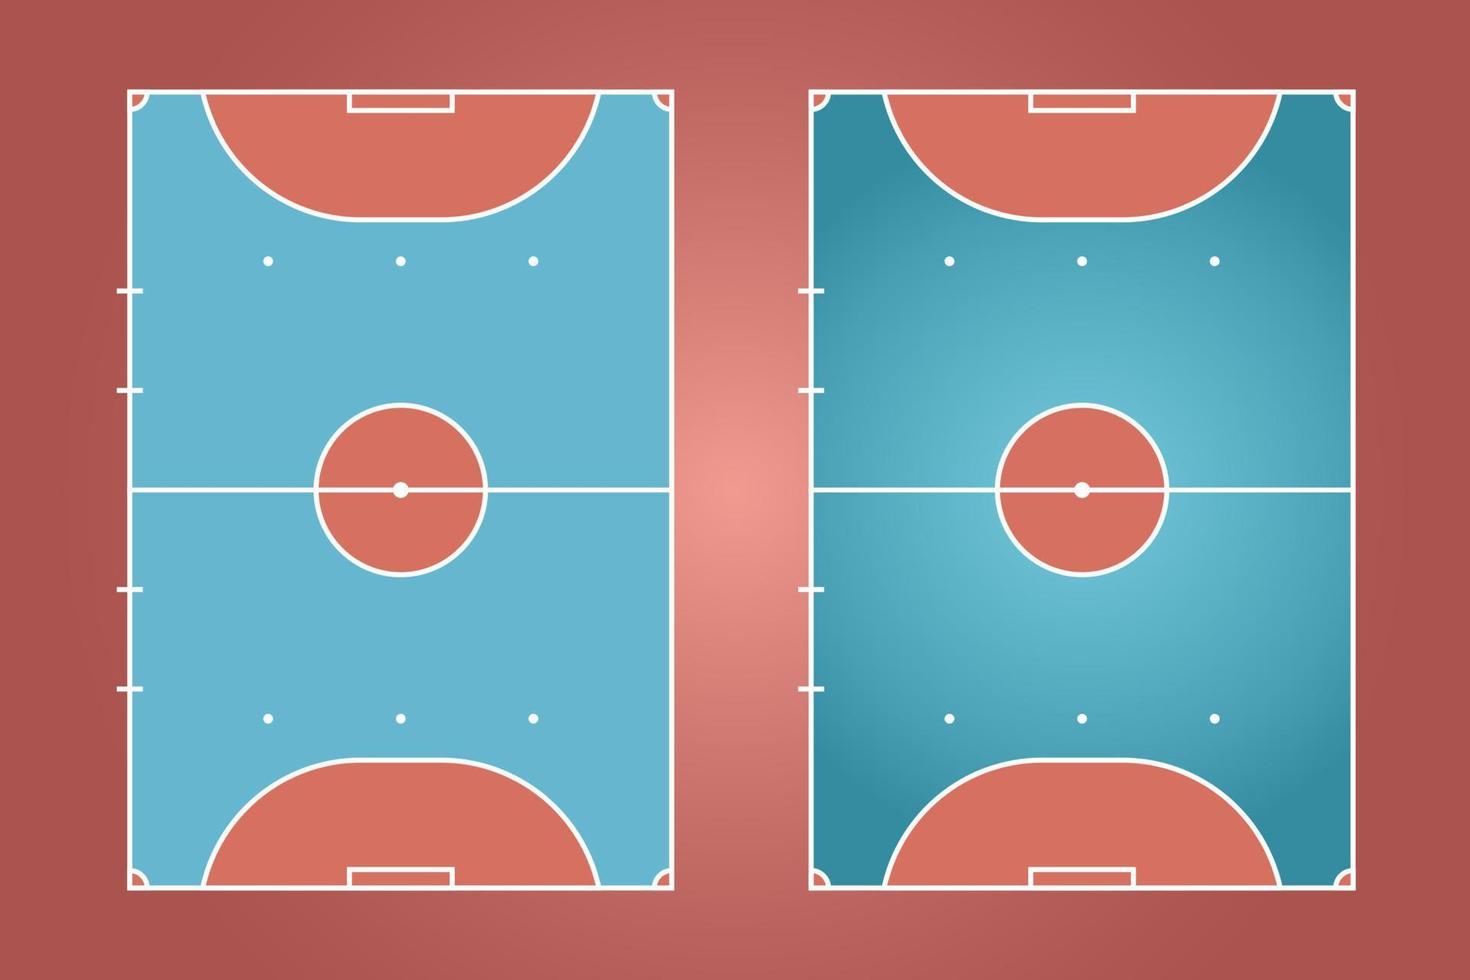 diseño plano de campo de fútbol sala, ilustración gráfica de campo de fútbol, vector de cancha de fútbol sala y diseño.